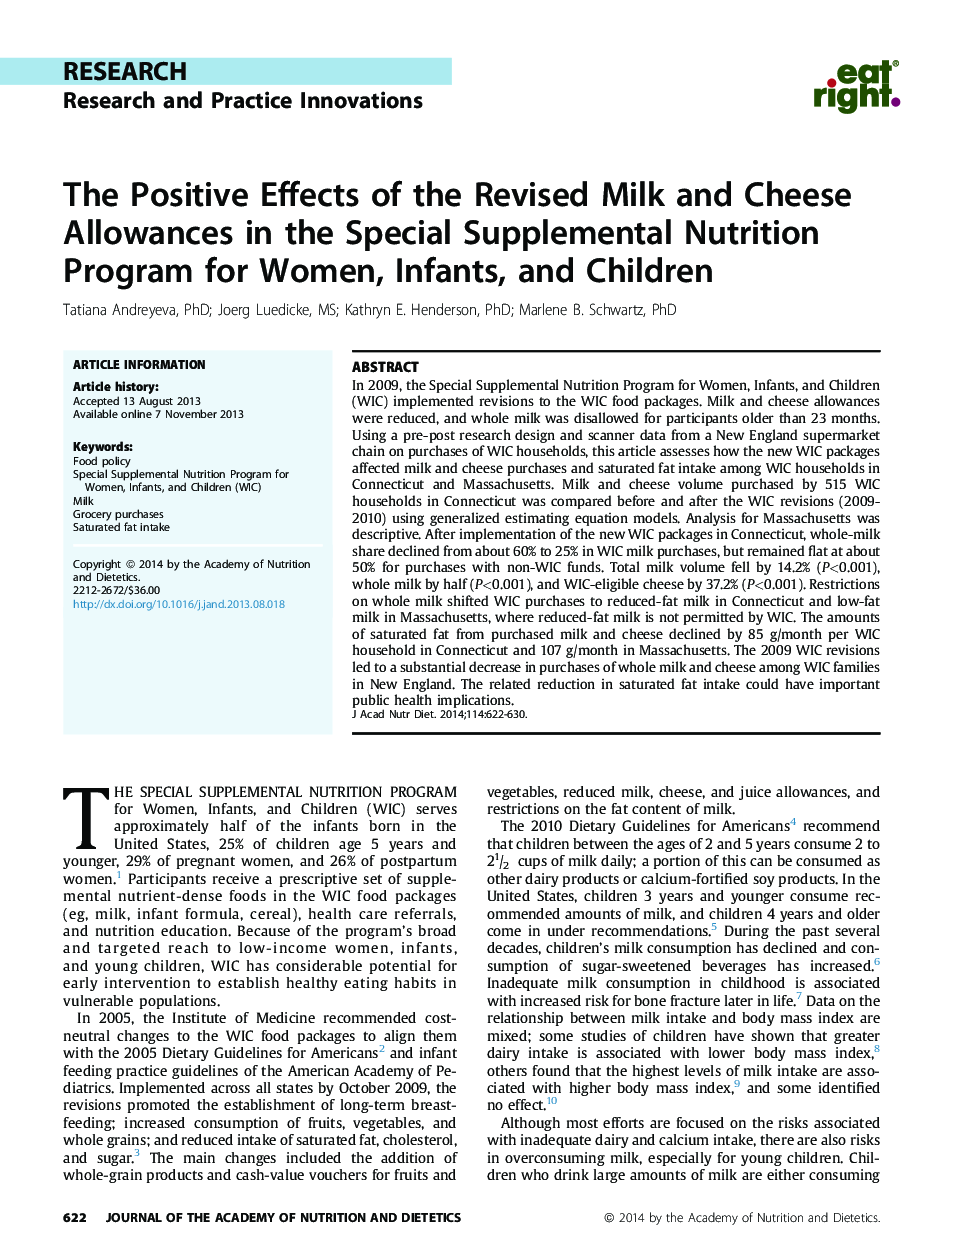 تأثیرات مثبت تجویز شیر و پنیر در برنامه غذایی ویژه مکمل غذایی برای زنان، نوزادان و کودکان 